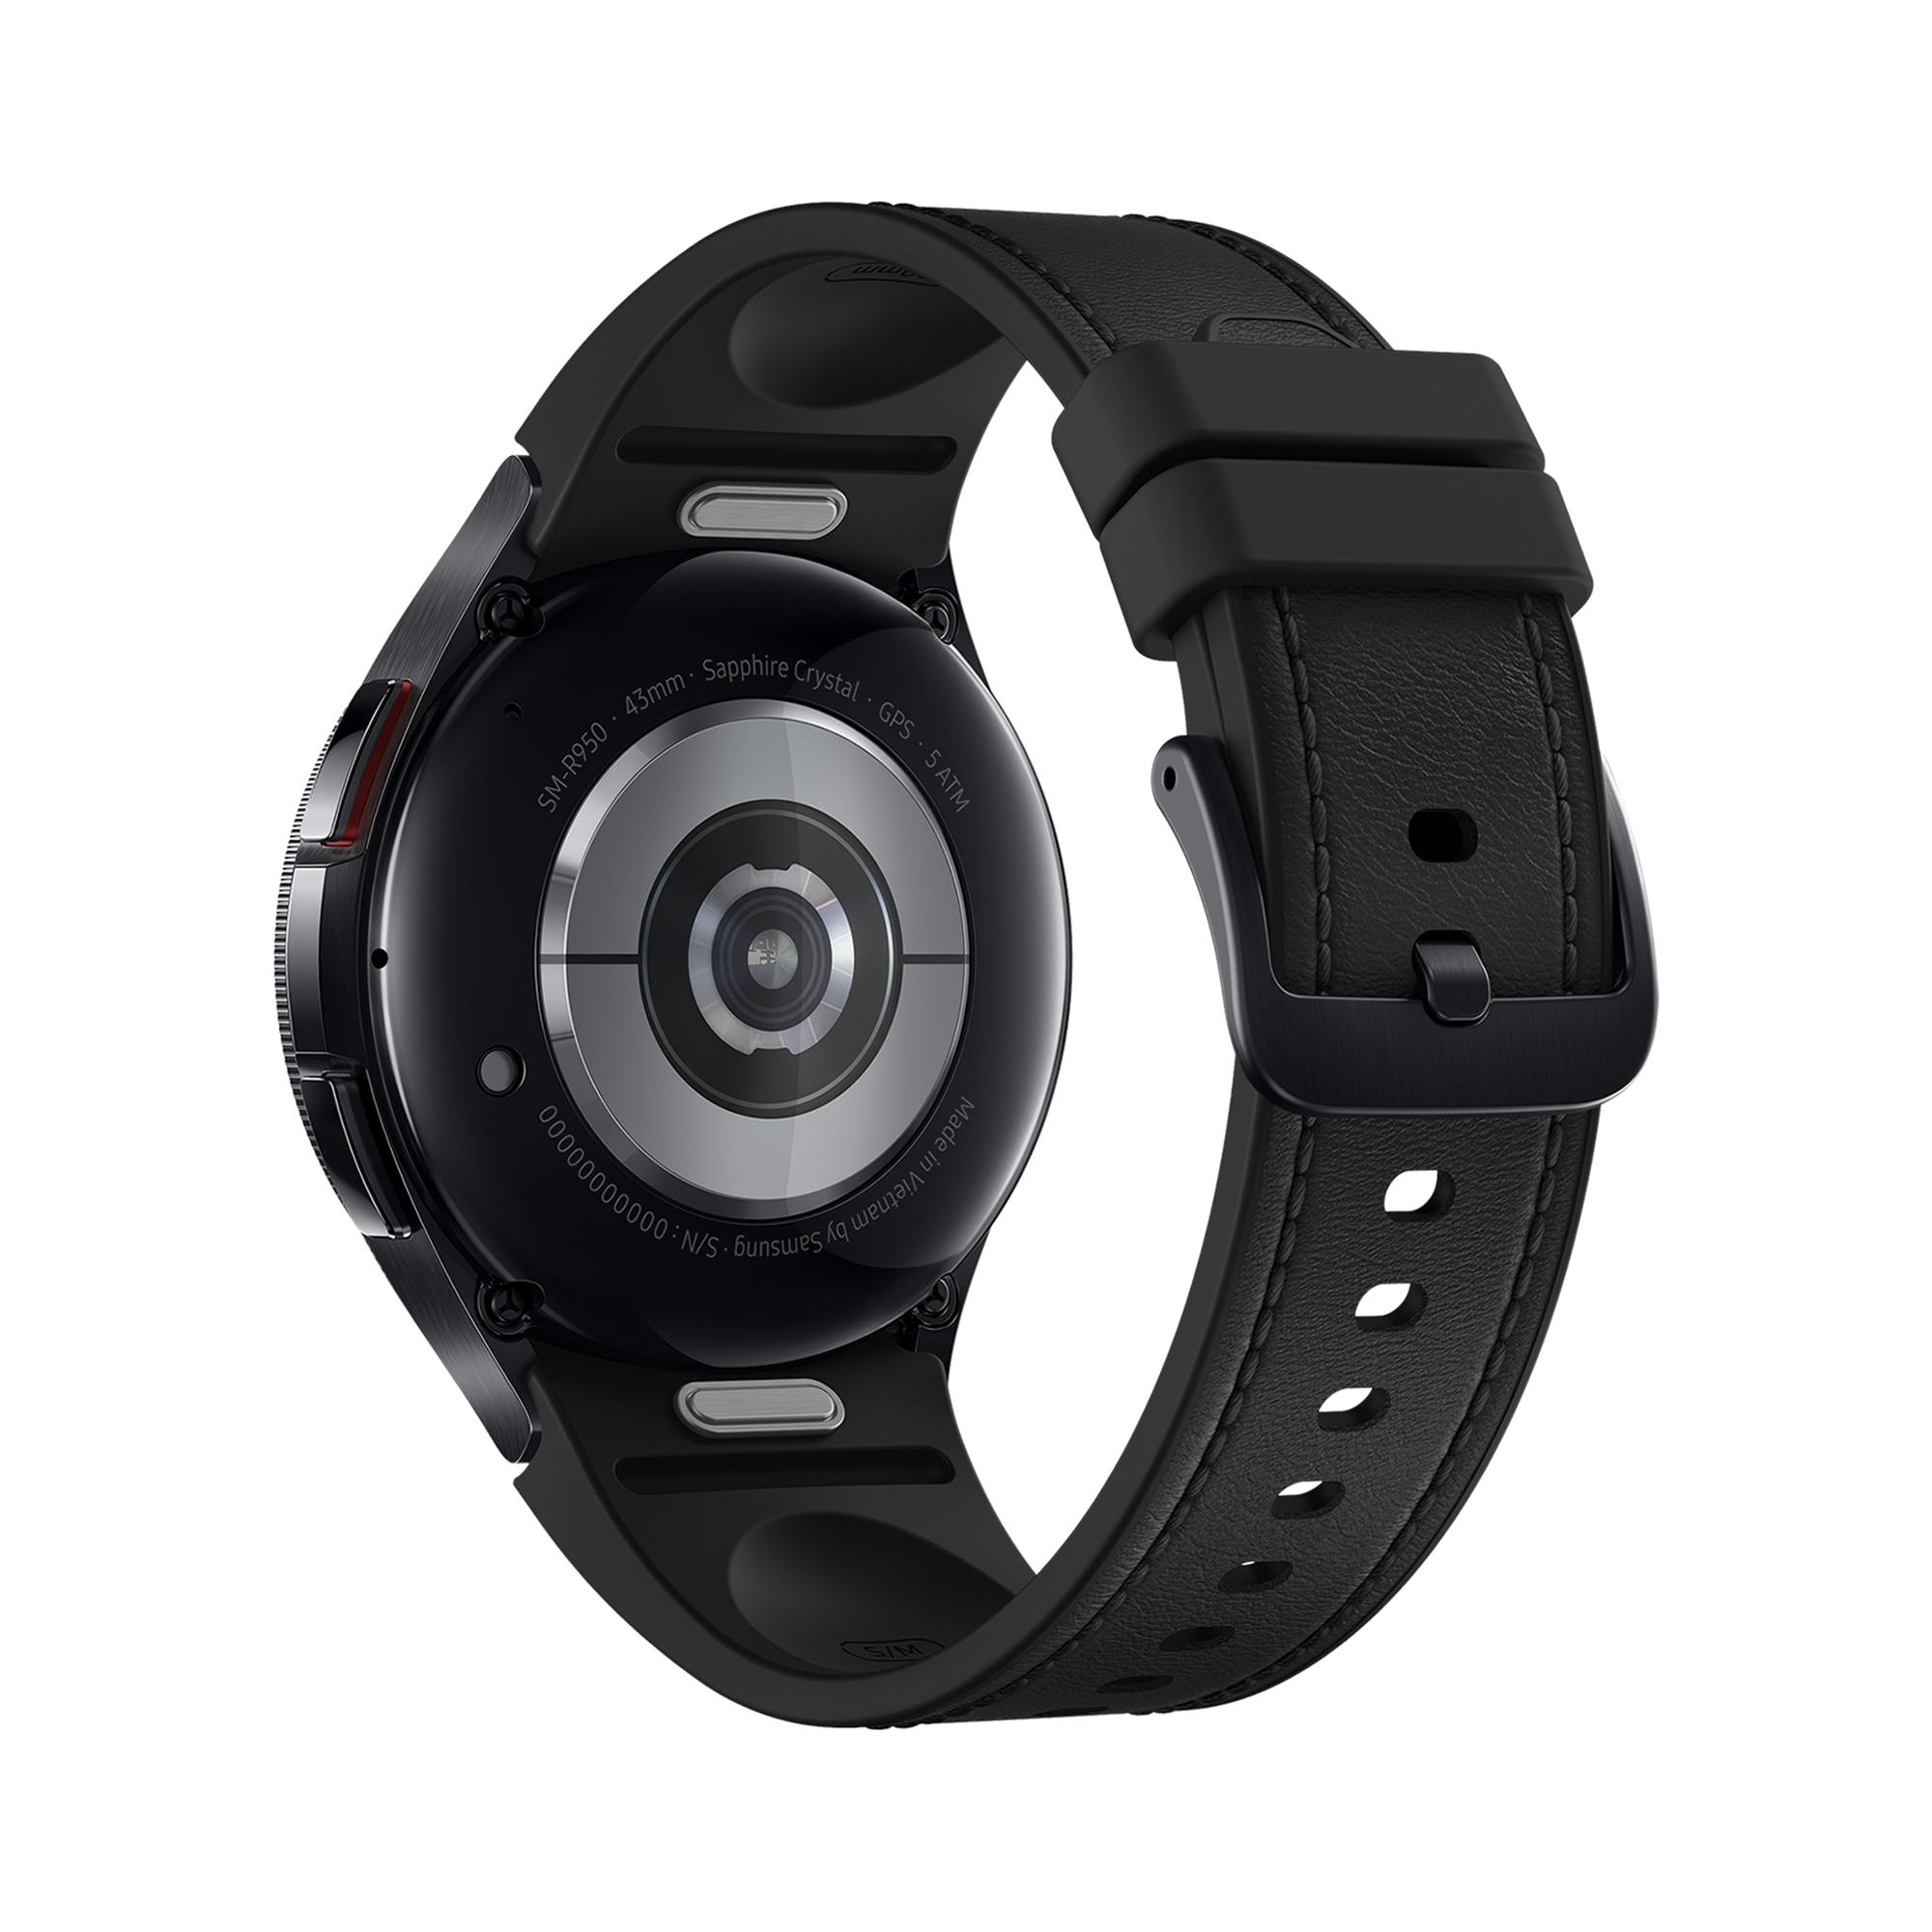 LTE S/M, Black Classic 43 Watch6 Smartwatch SAMSUNG Galaxy Kunstleder, mm